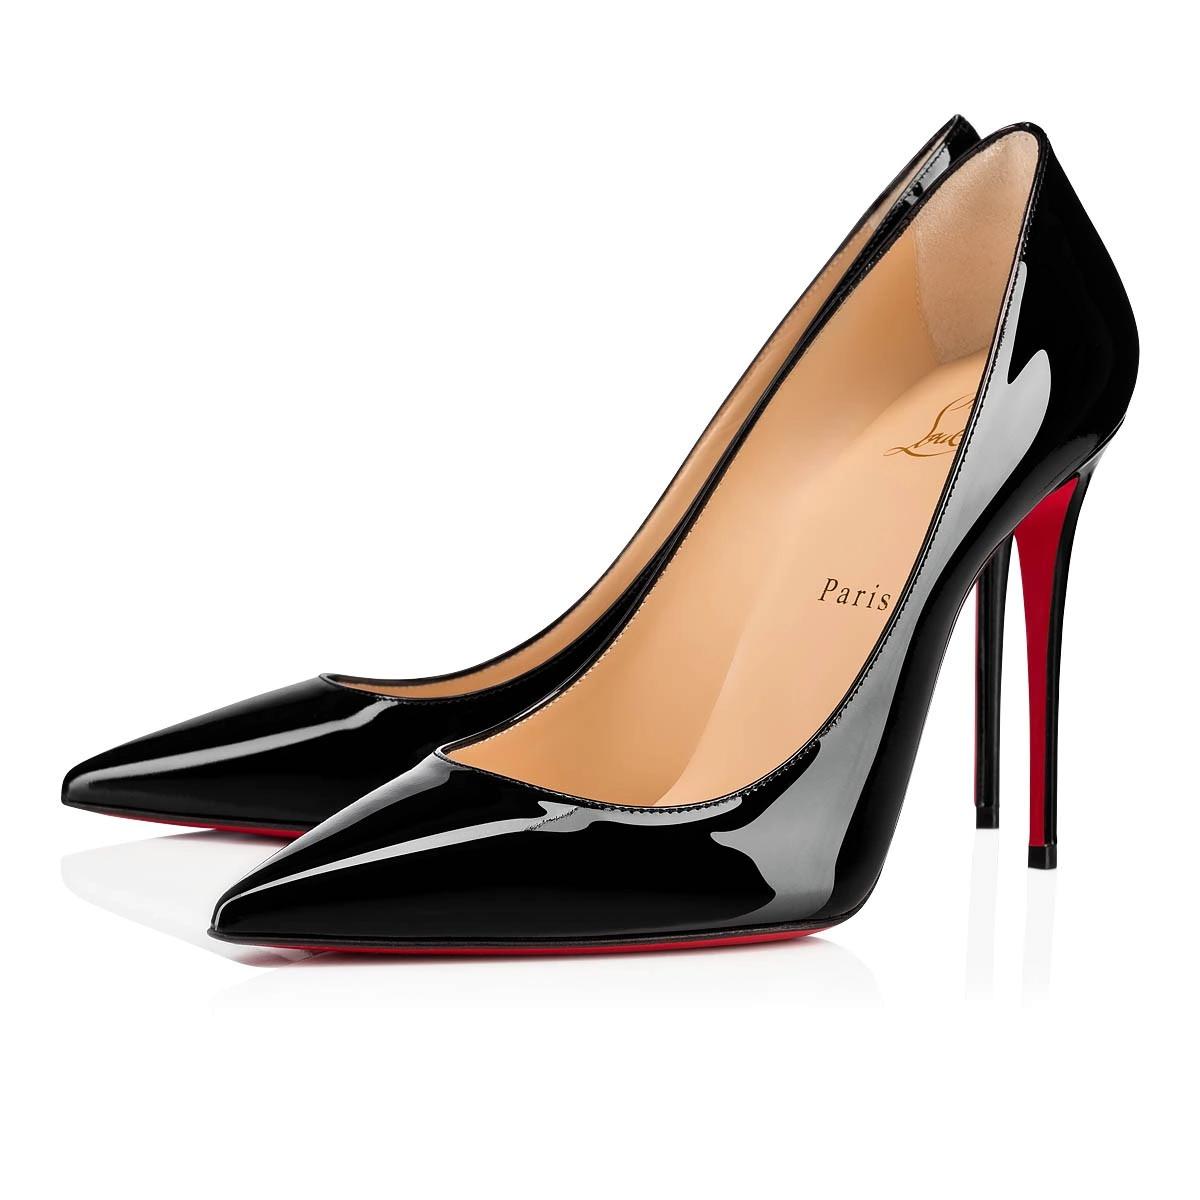 [Świętujemy 30 lat czerwonych piątków S! 】 Czerwone buty CL Kate ze skóry lakierowanej - 90% zniżki.